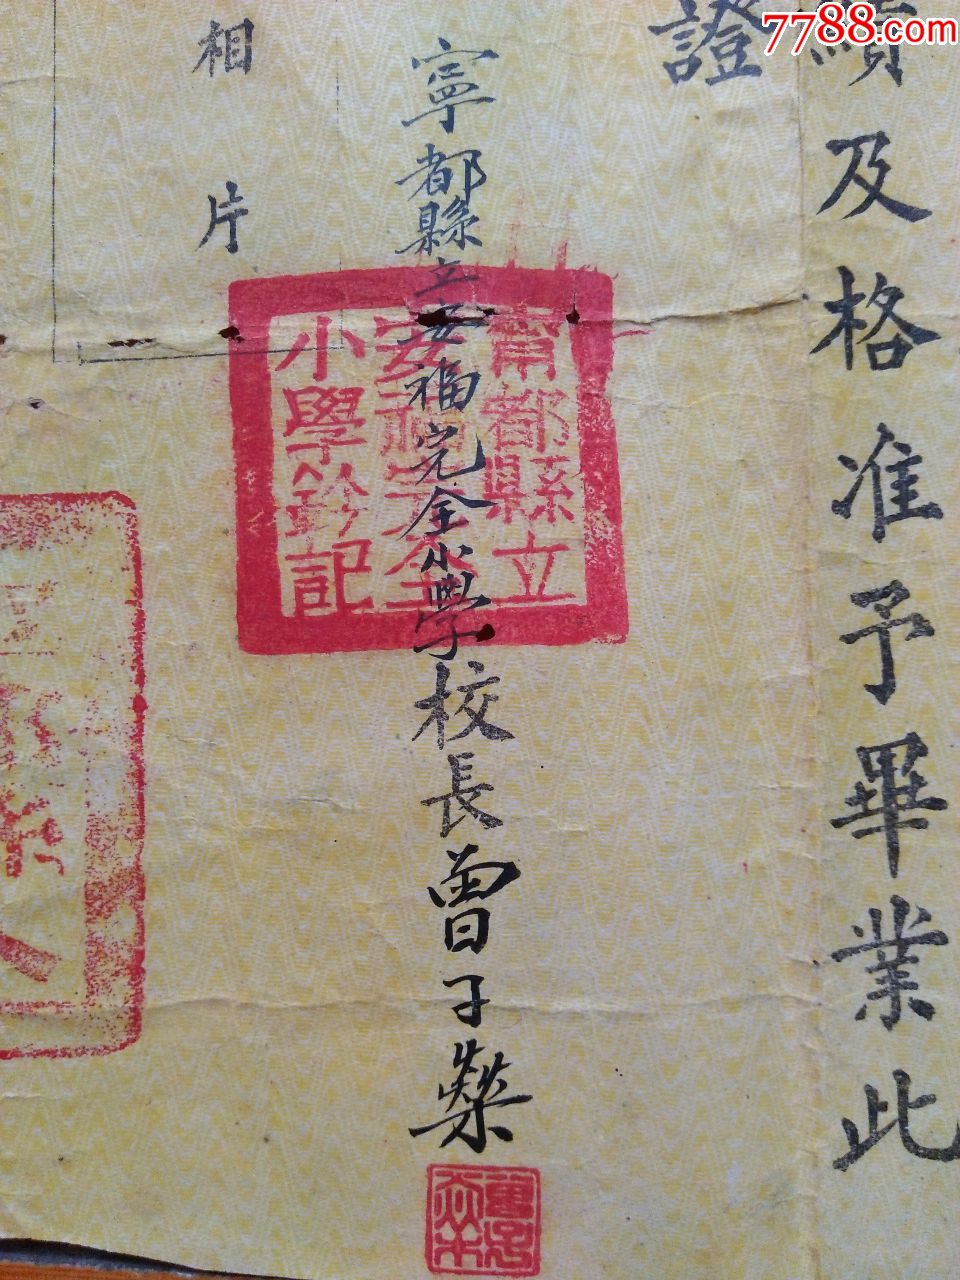 盖有'宁都县人民政府大印的1951年【毕业证】